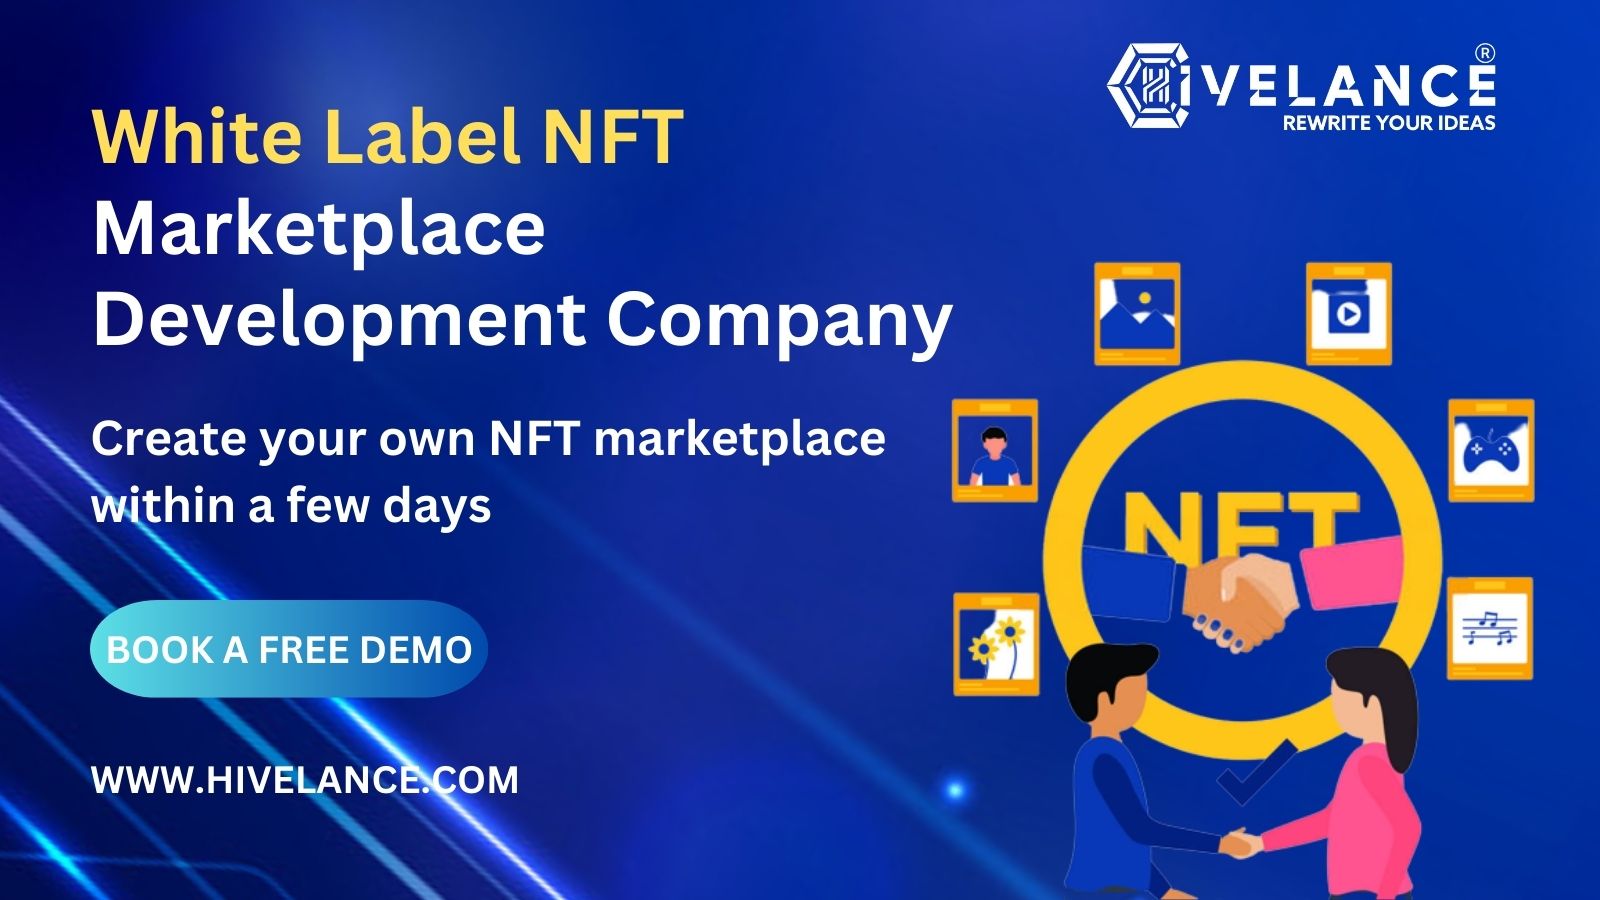 White label NFT marketplace development for budding entrepreneurs